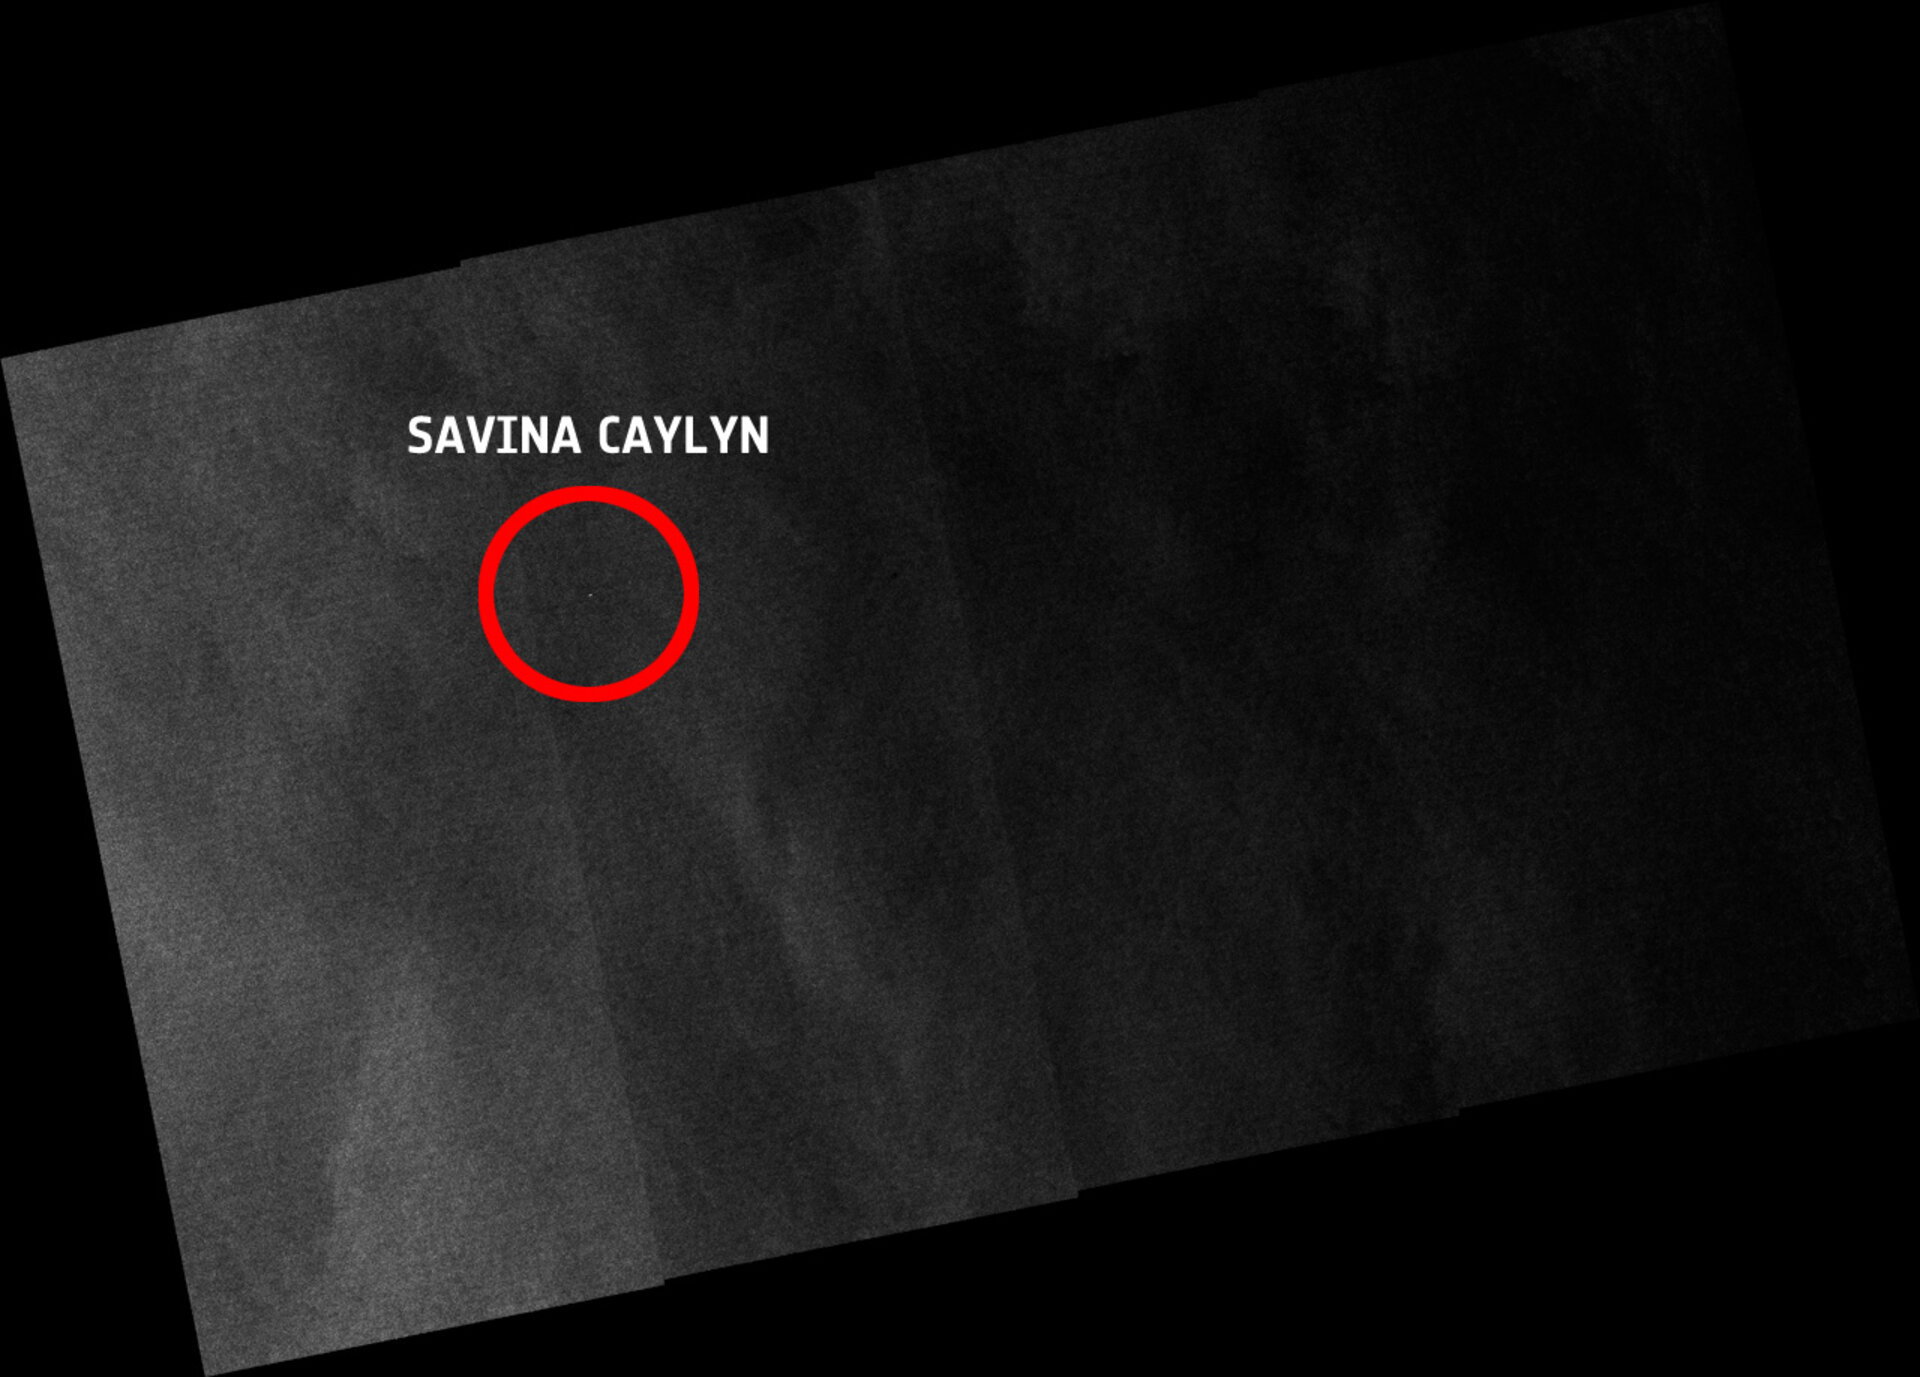 Savina Caylyn's location on Thursday